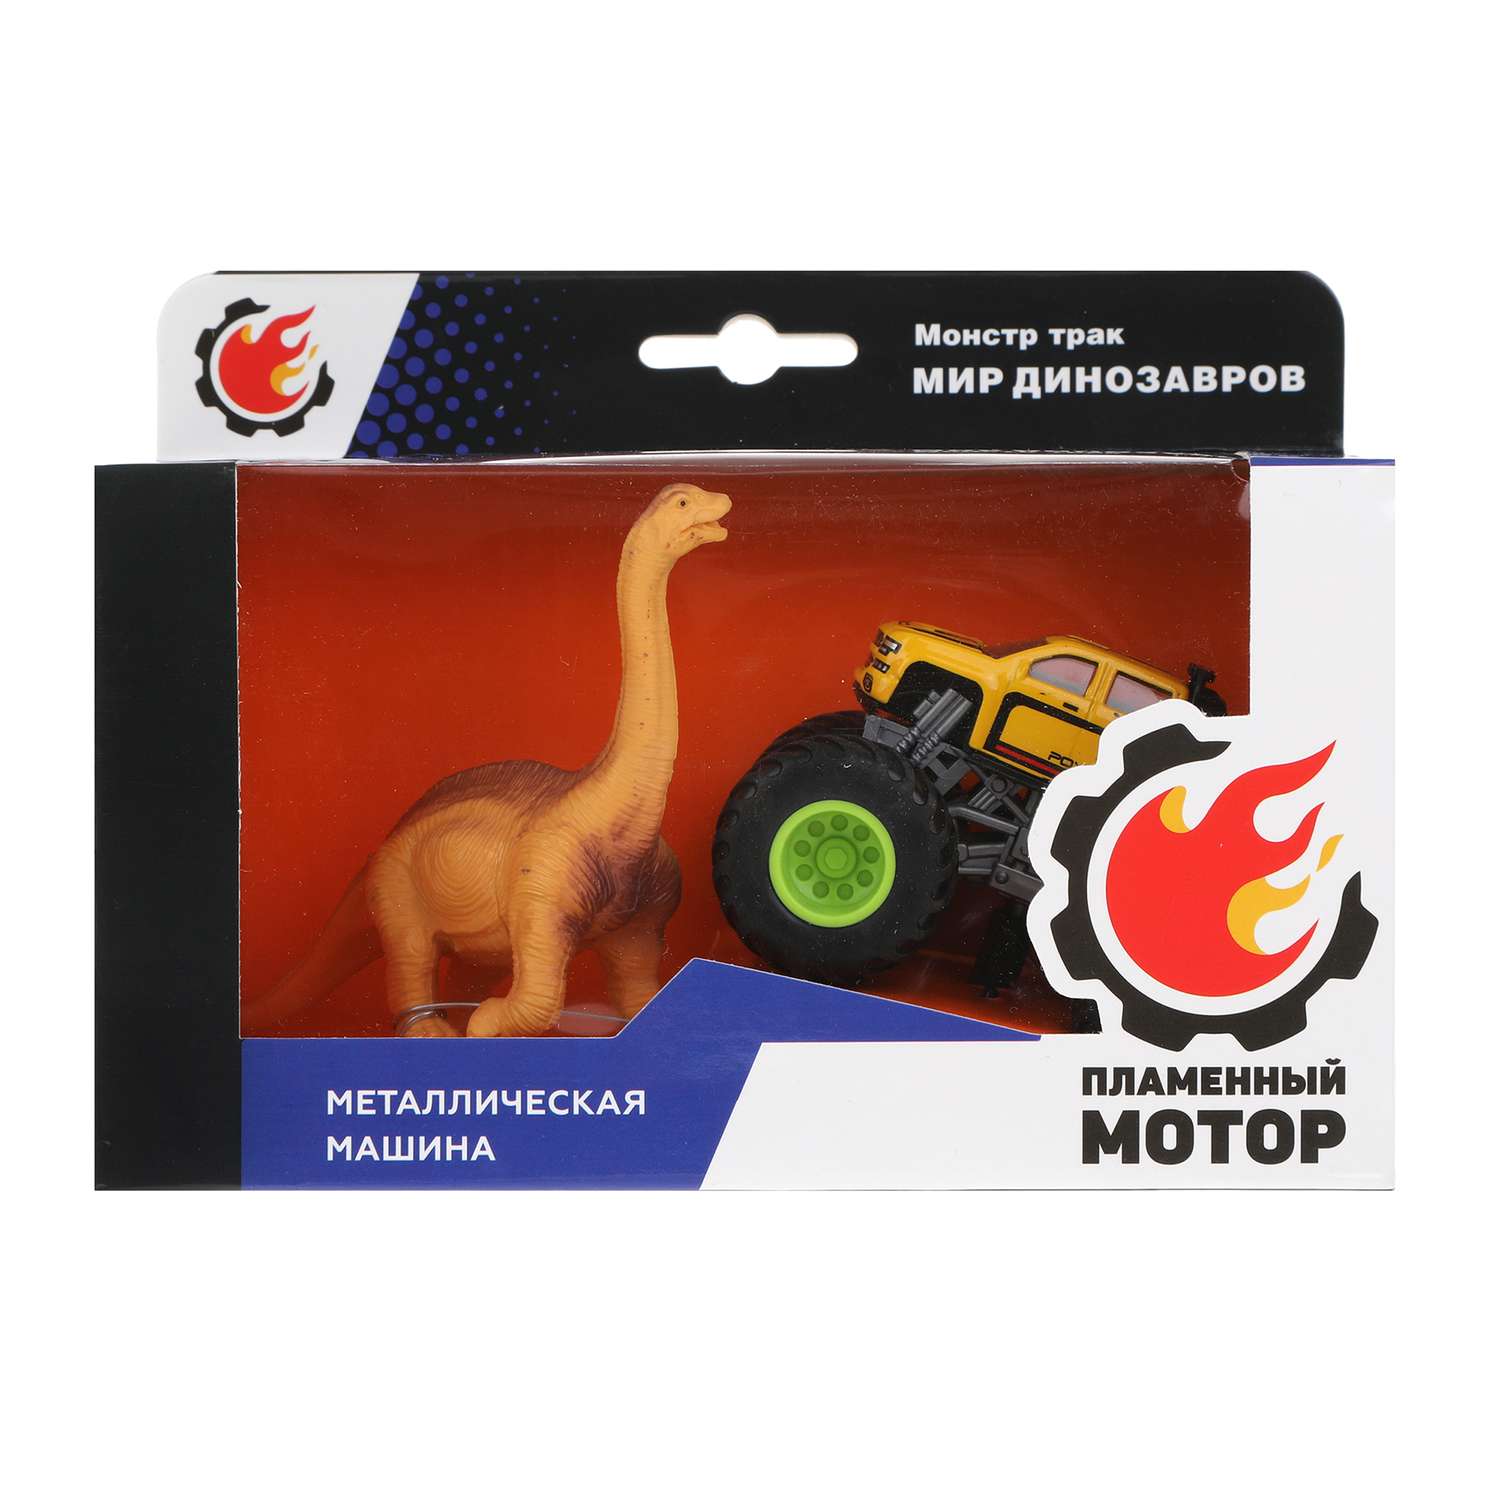 Машинка металлическая Пламенный мотор Монстр трак и фигурка динозавра 870533 - фото 4